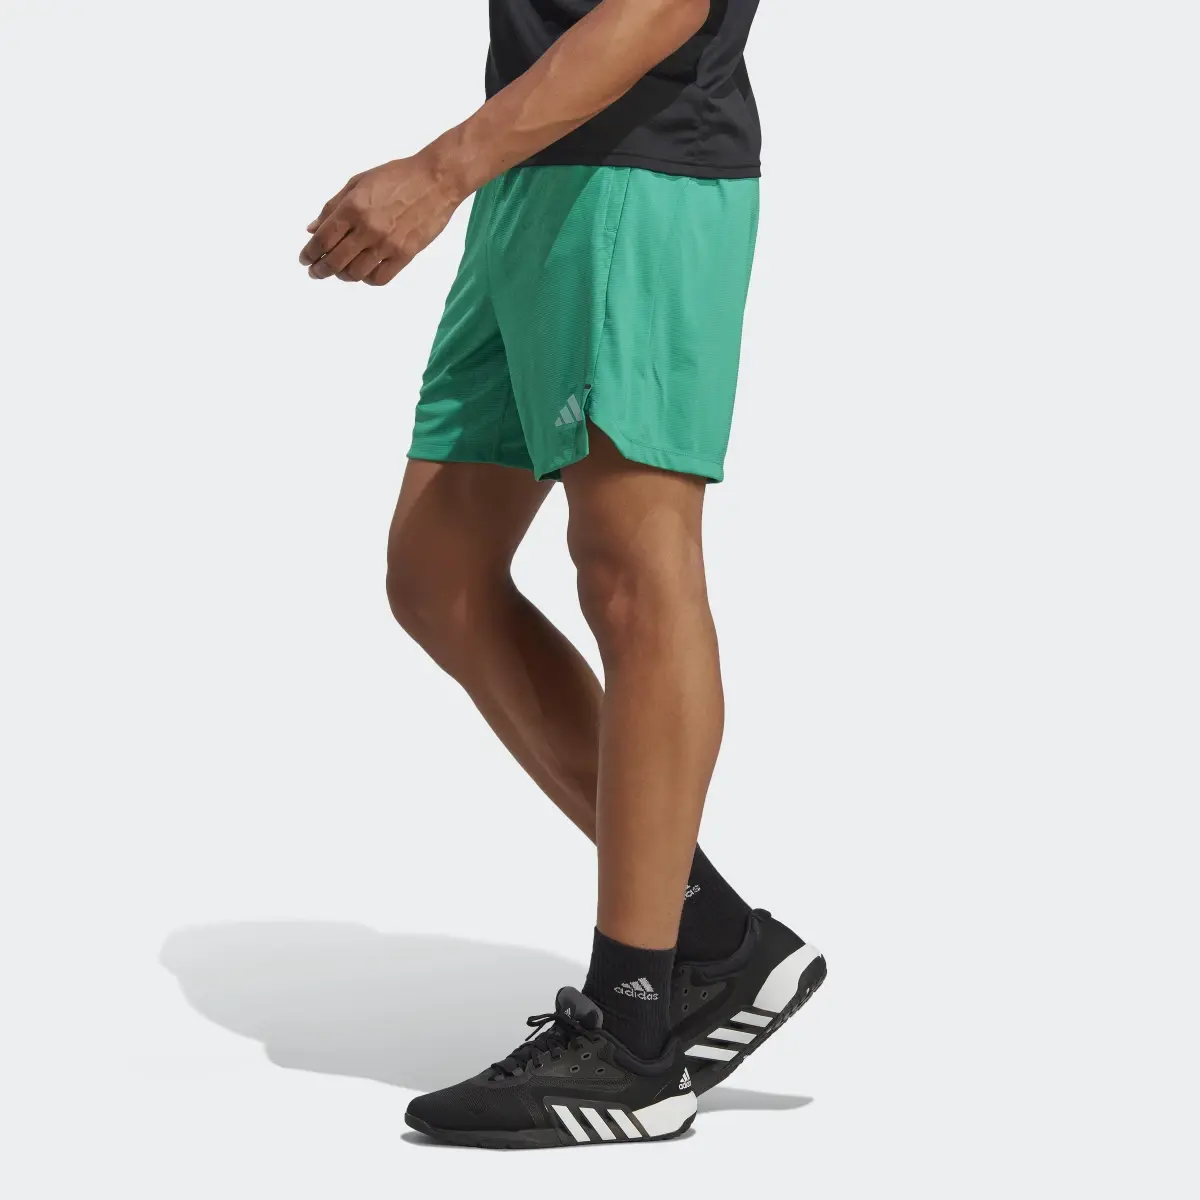 Adidas Workout PU Print Shorts. 2